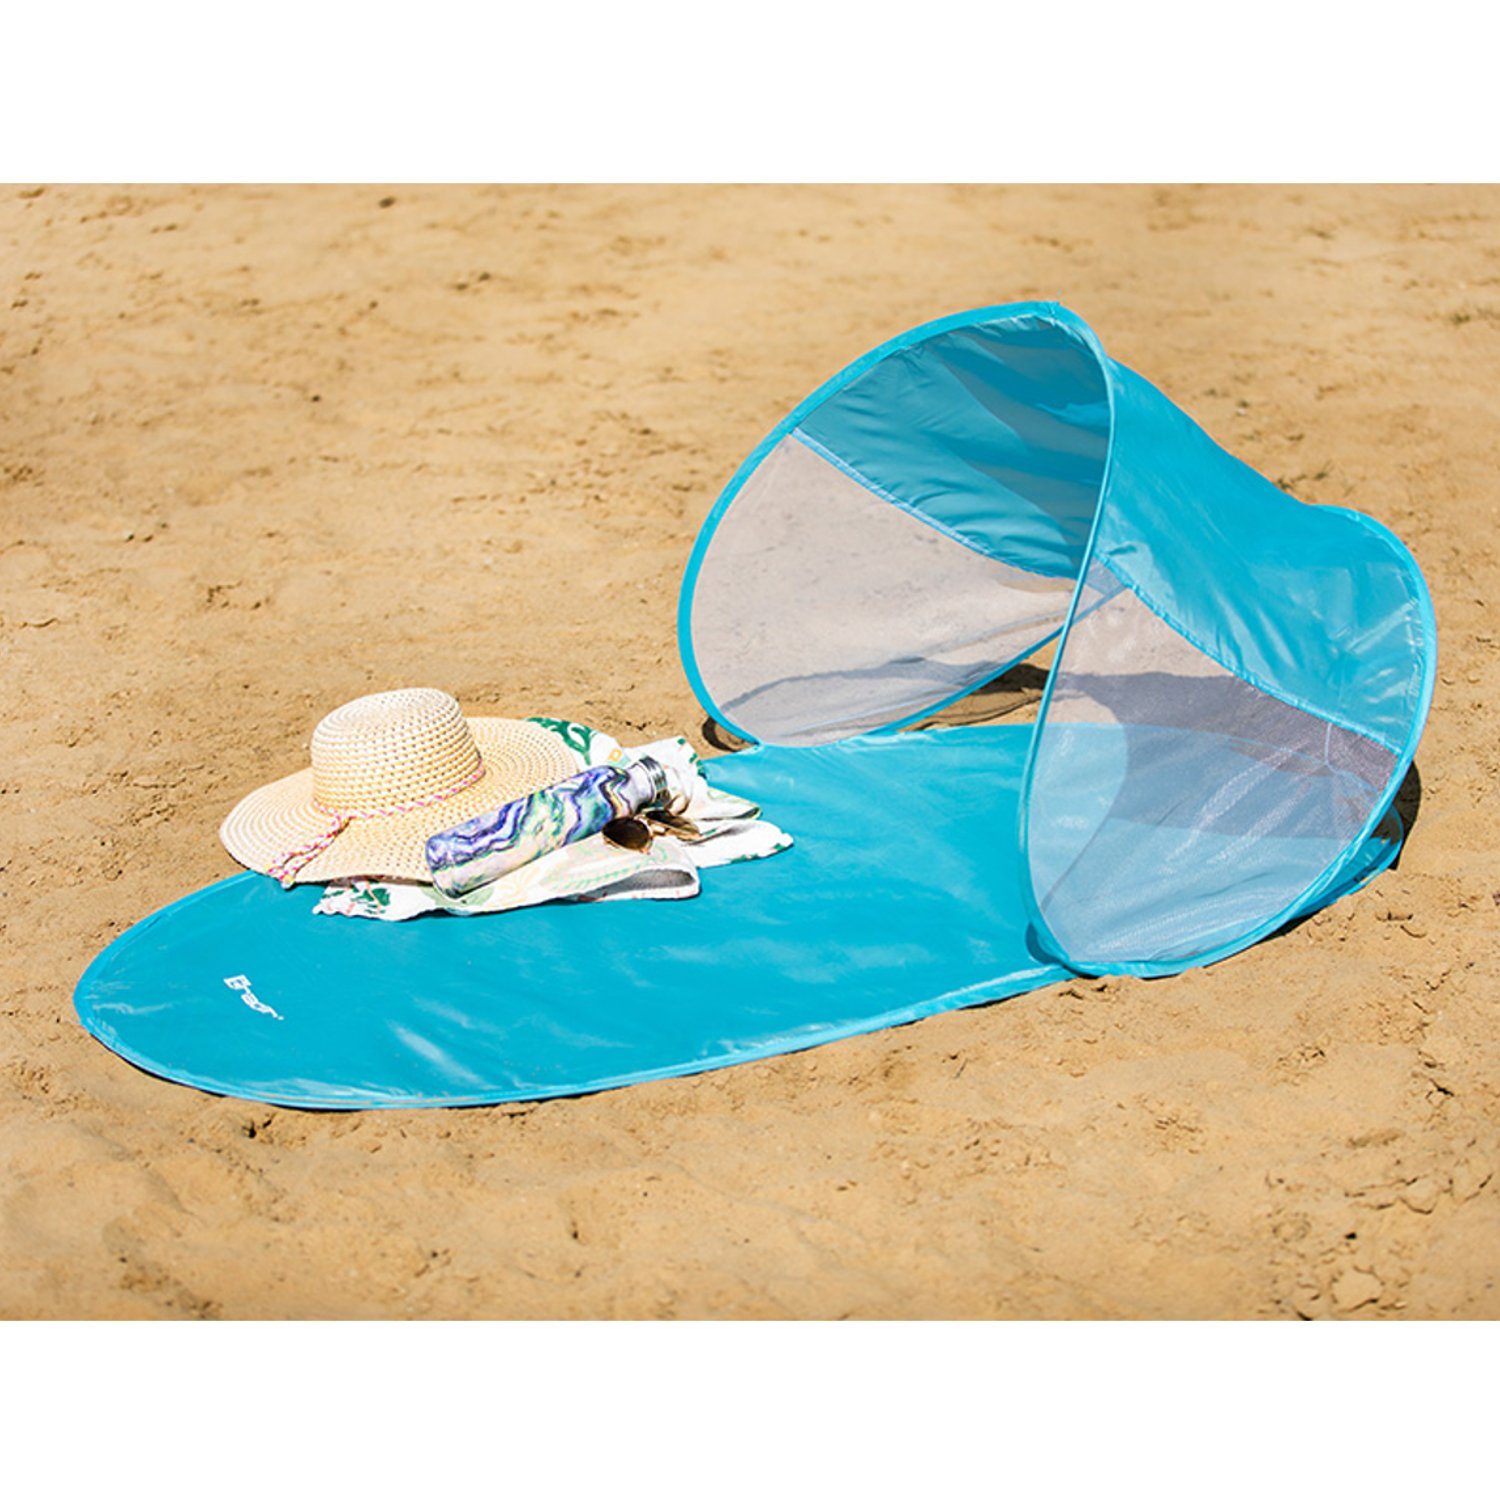 Tracer Strandmuschel, Personen: 1, Strandmatte mit 145x70cm Blau neigbarem Sonnenschutzdach